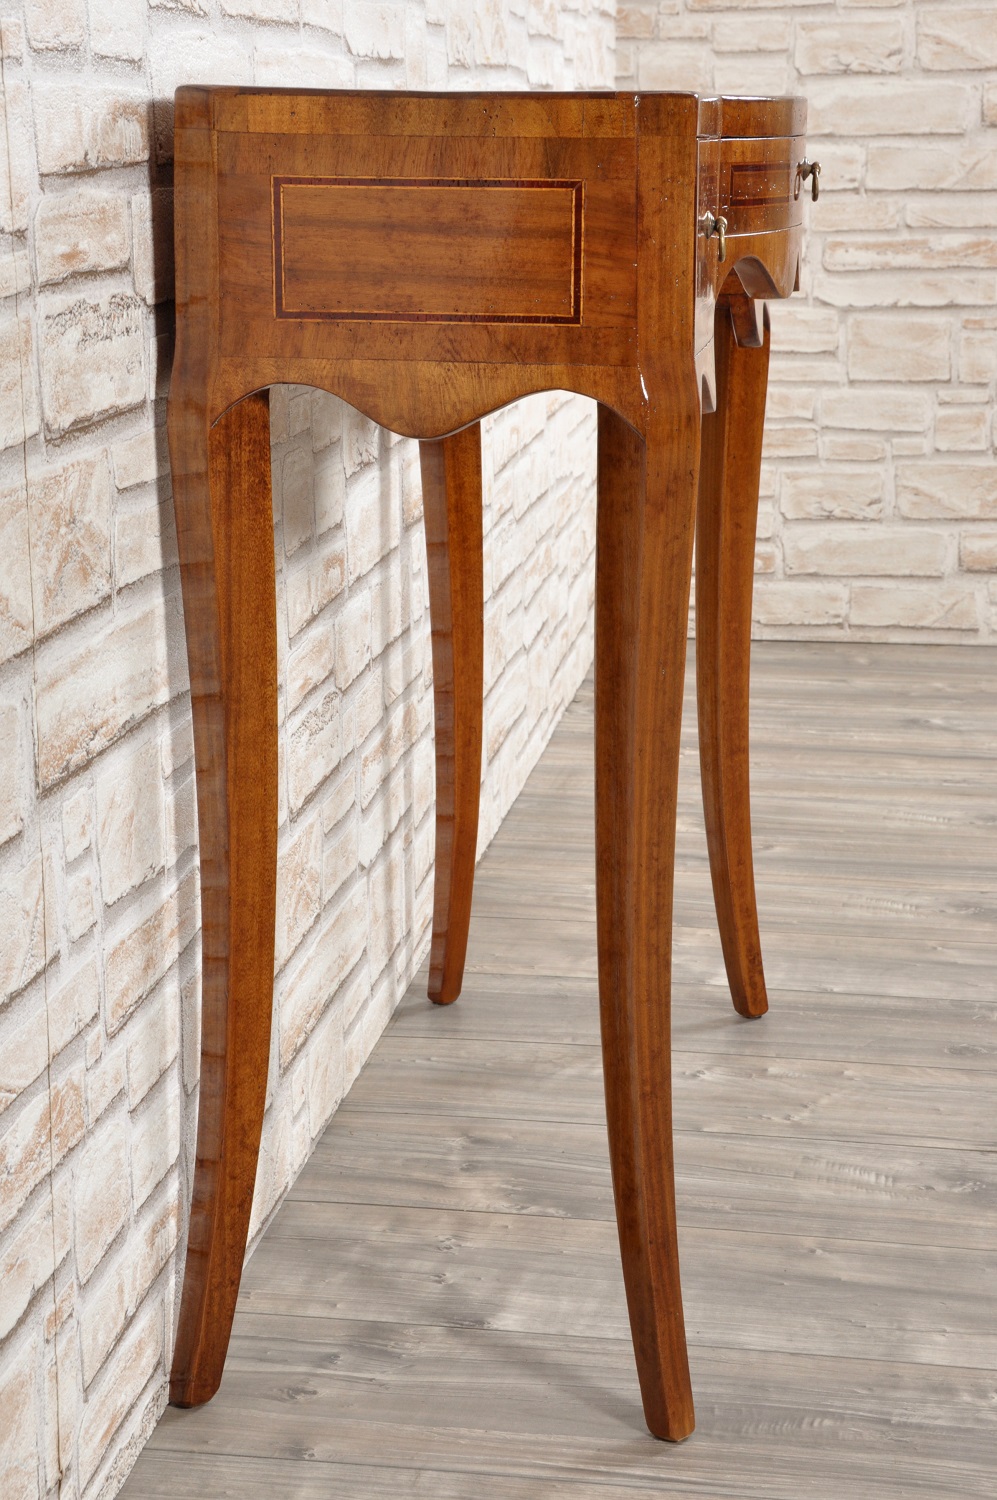 consolle sagomata e lastronata in legni pregiati realizzata nello stile classico vicentino con intarsiature riprodotte a mano